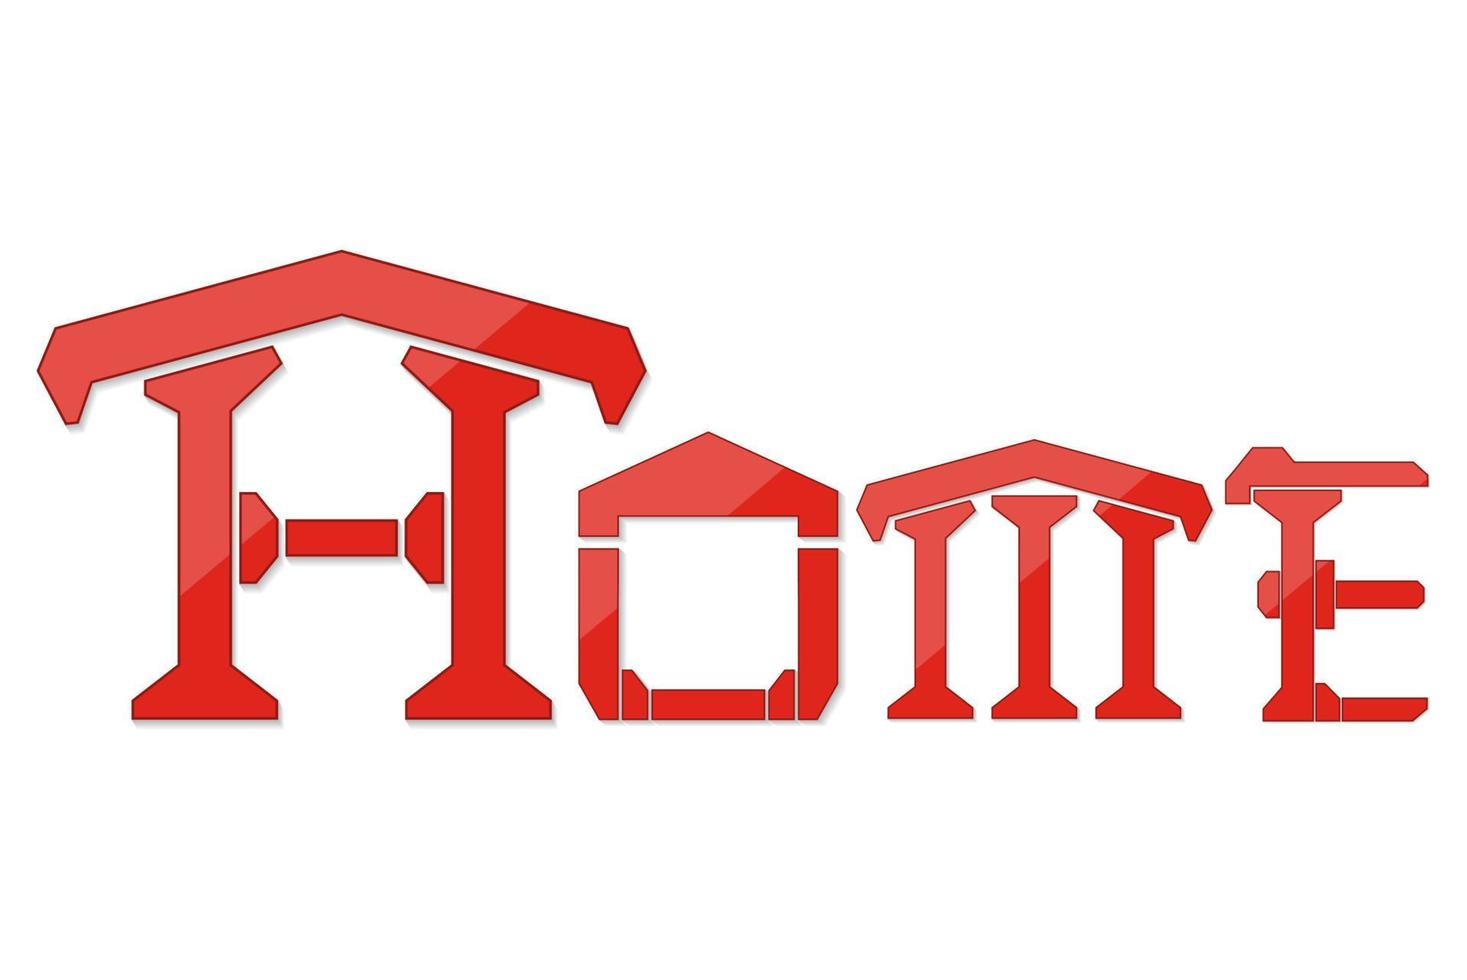 Home logo design isolate on white background vector illustration